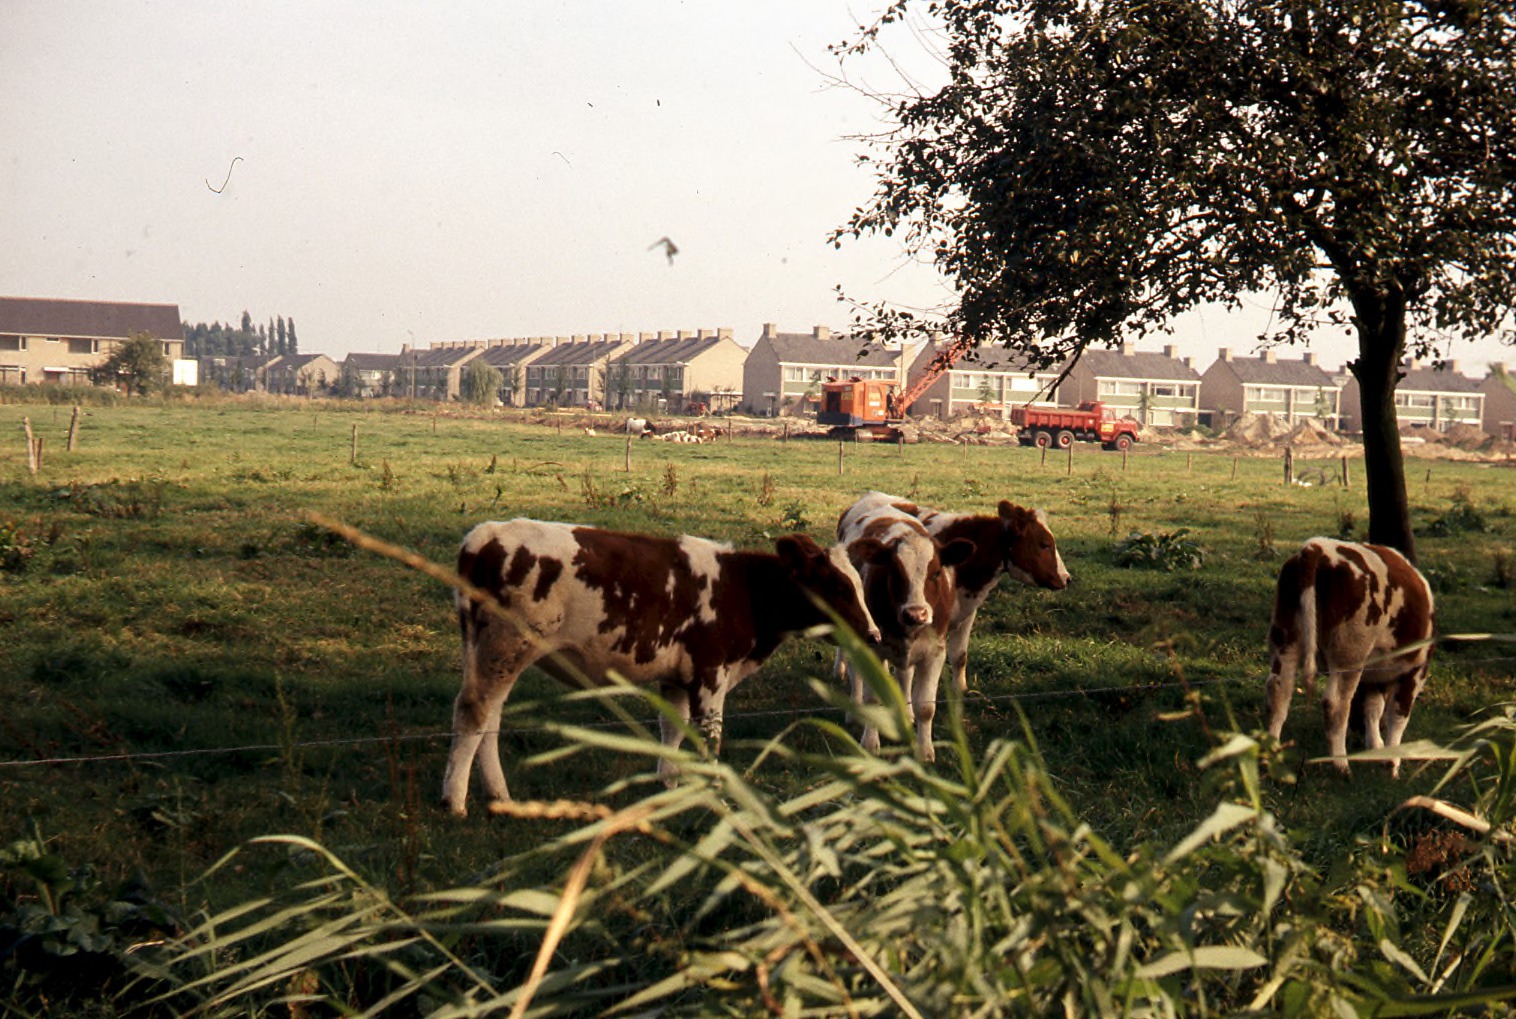 Nieuwbouwwijk De Baarzen in aanbouw (1972), collectie Vera Delleman - de Kort